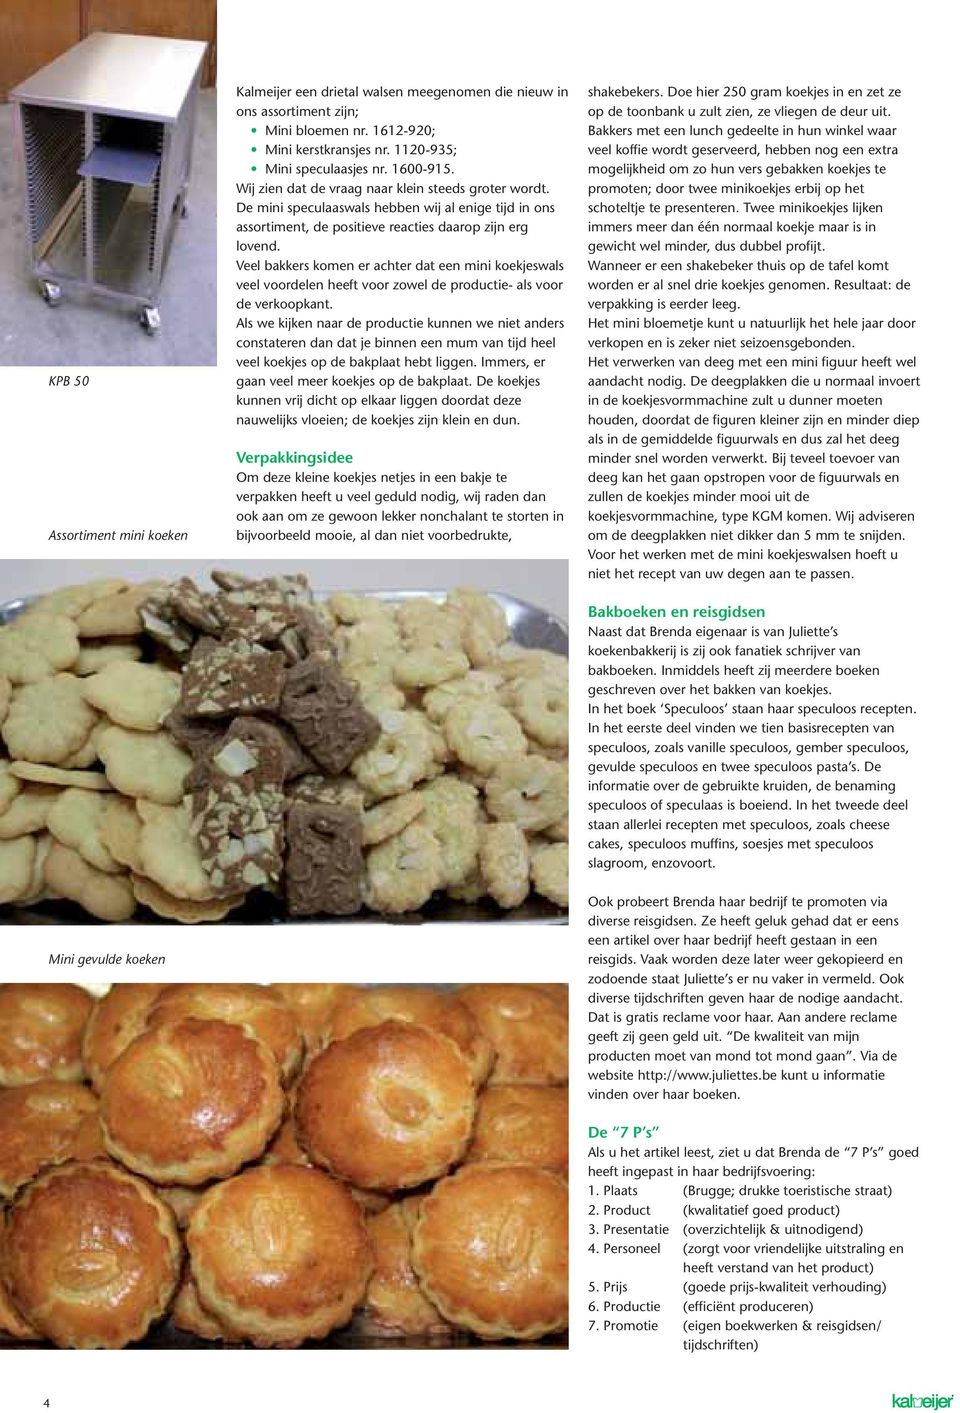 Veel bakkers komen er achter dat een mini koekjeswals veel voordelen heeft voor zowel de productie- als voor de verkoopkant.